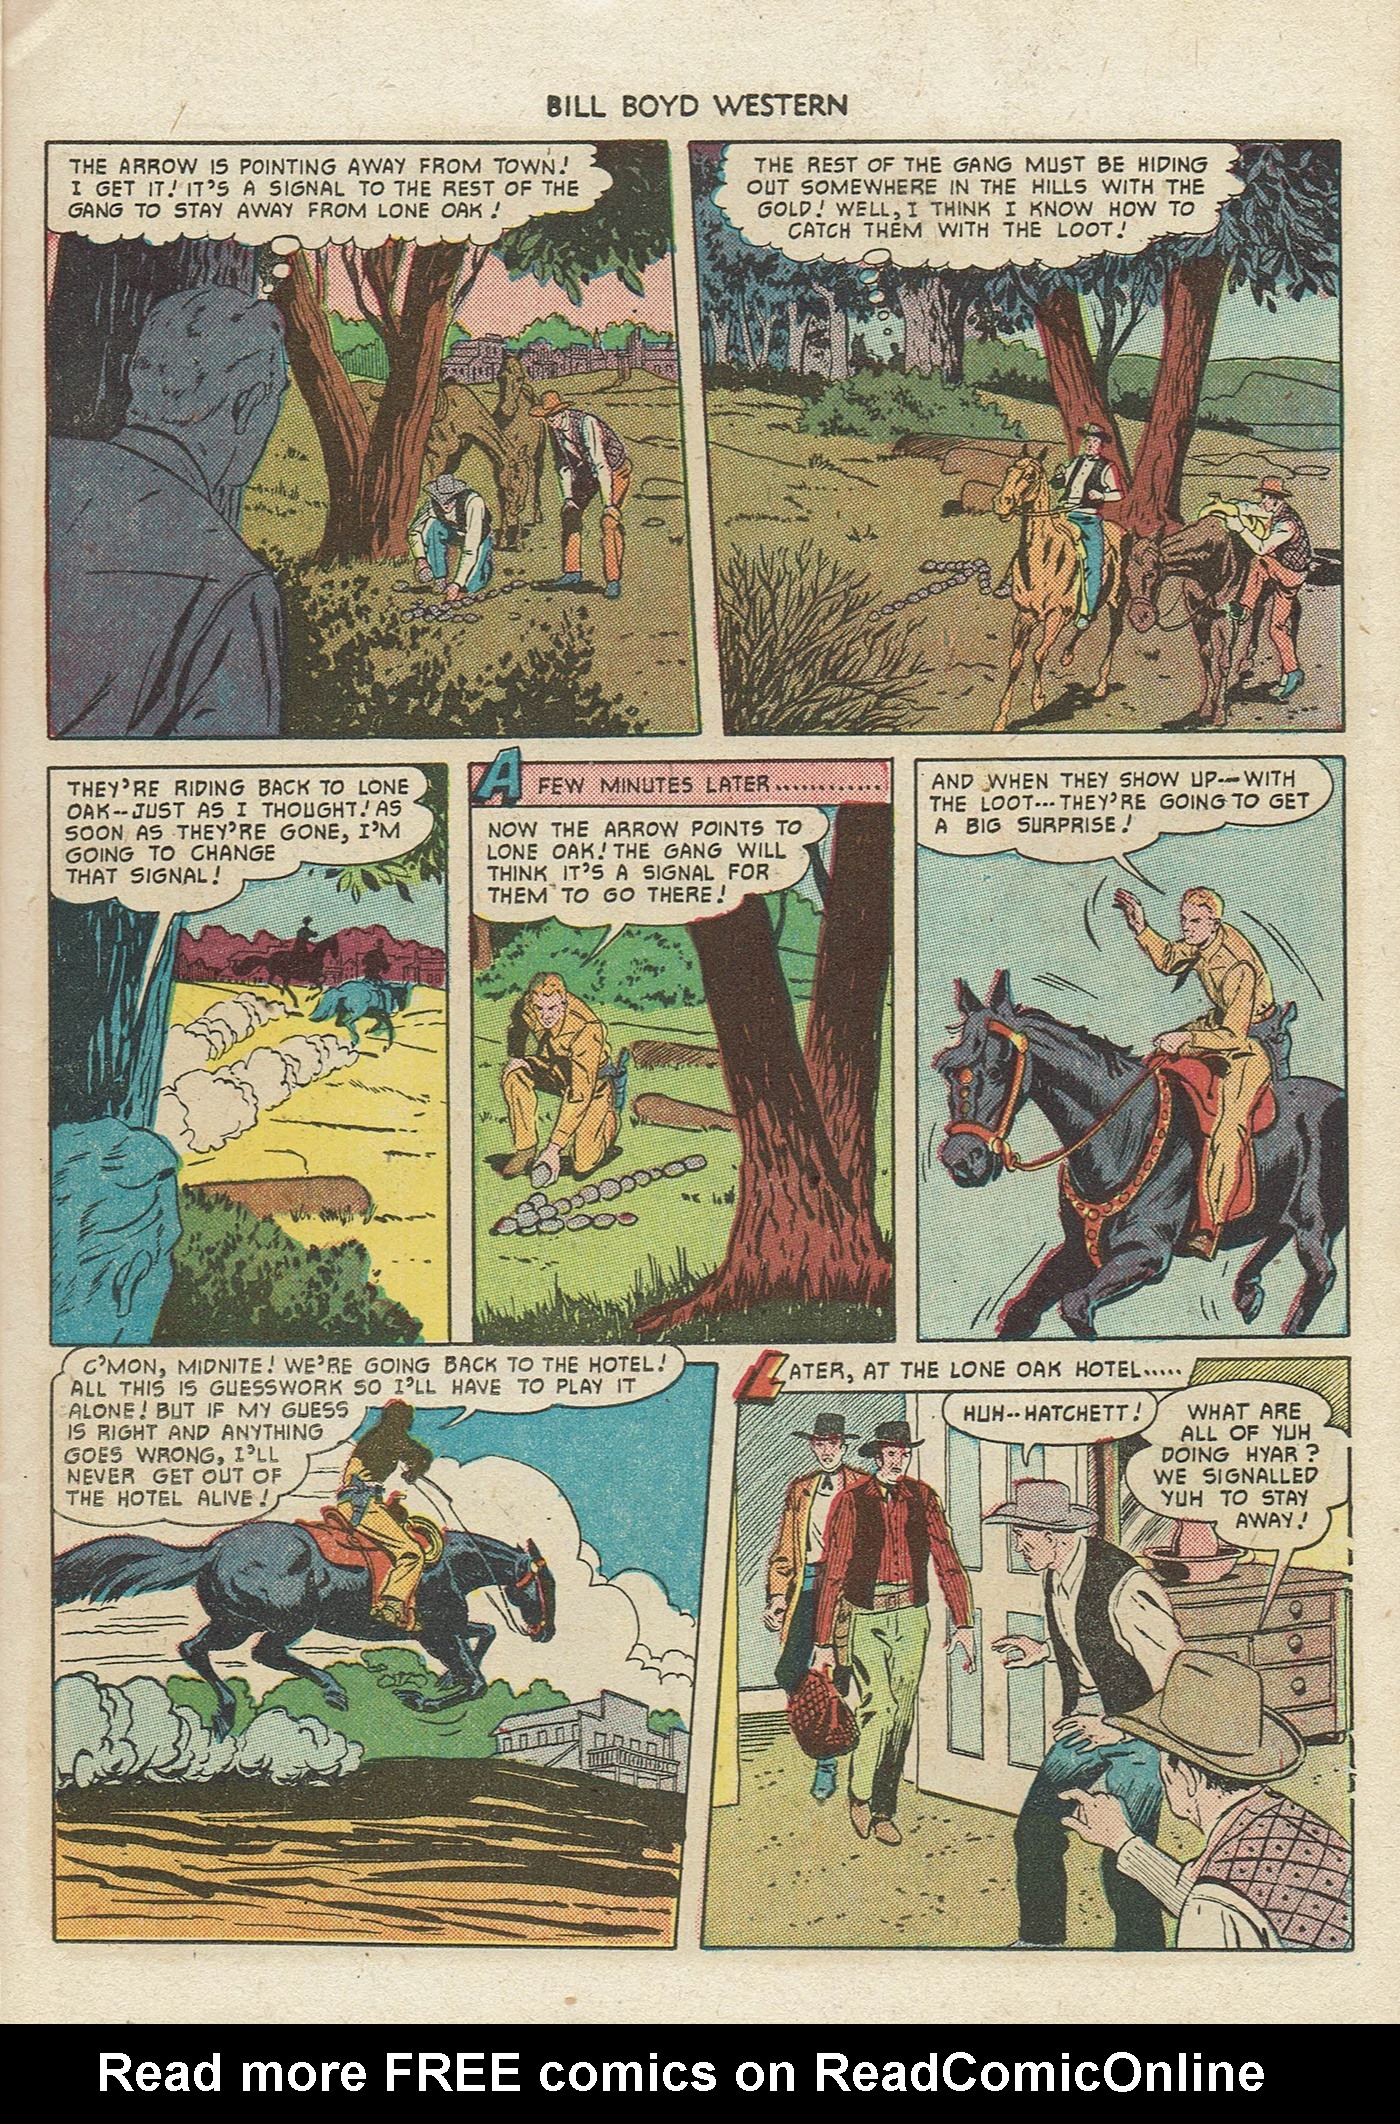 Read online Bill Boyd Western comic -  Issue #13 - 11